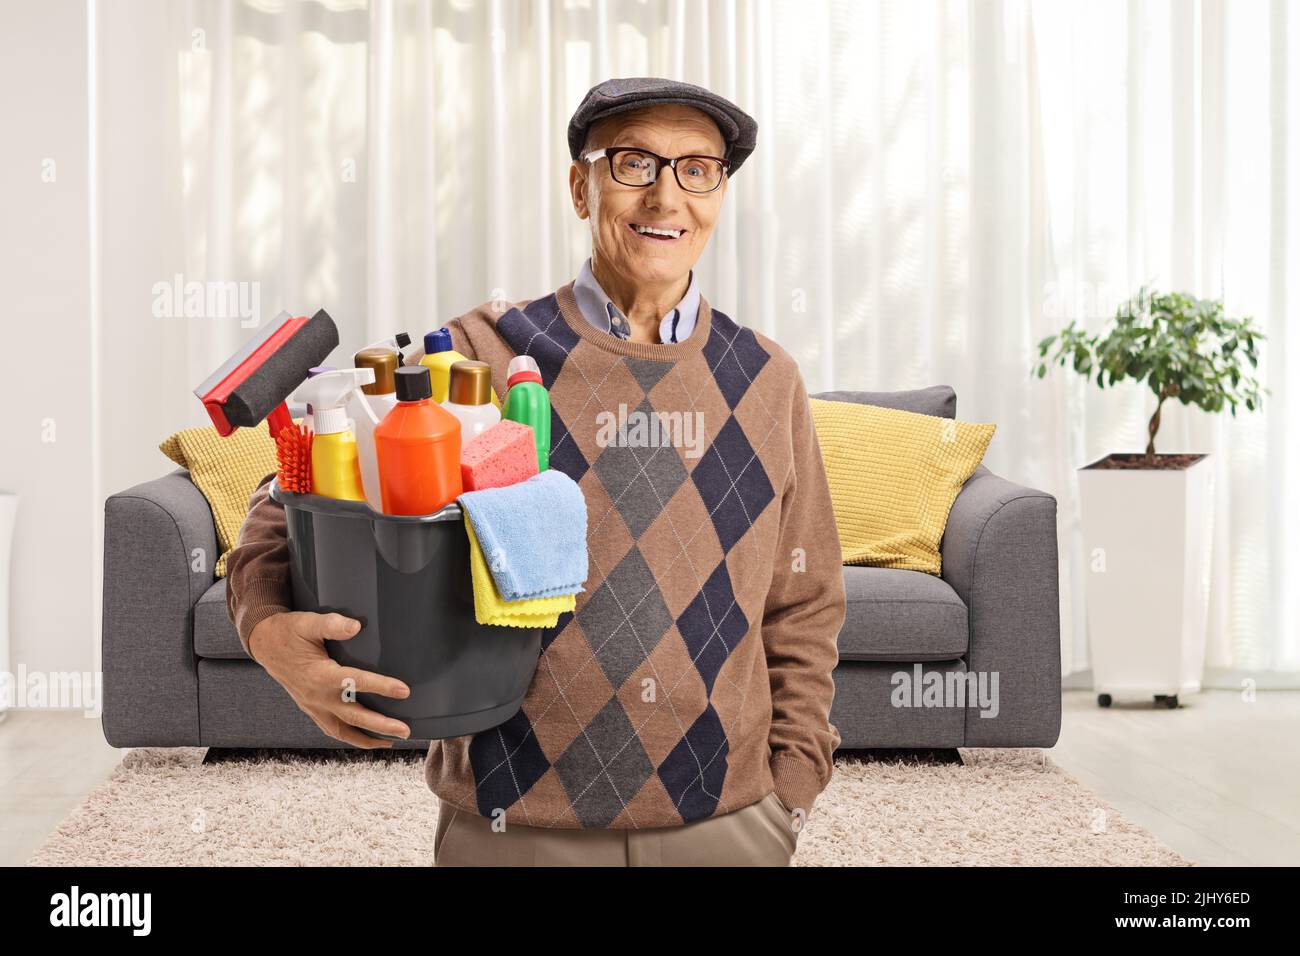 Uomo anziano che tiene un secchio con i rifornimenti di pulizia e sta in piedi all'interno di un soggiorno Foto Stock